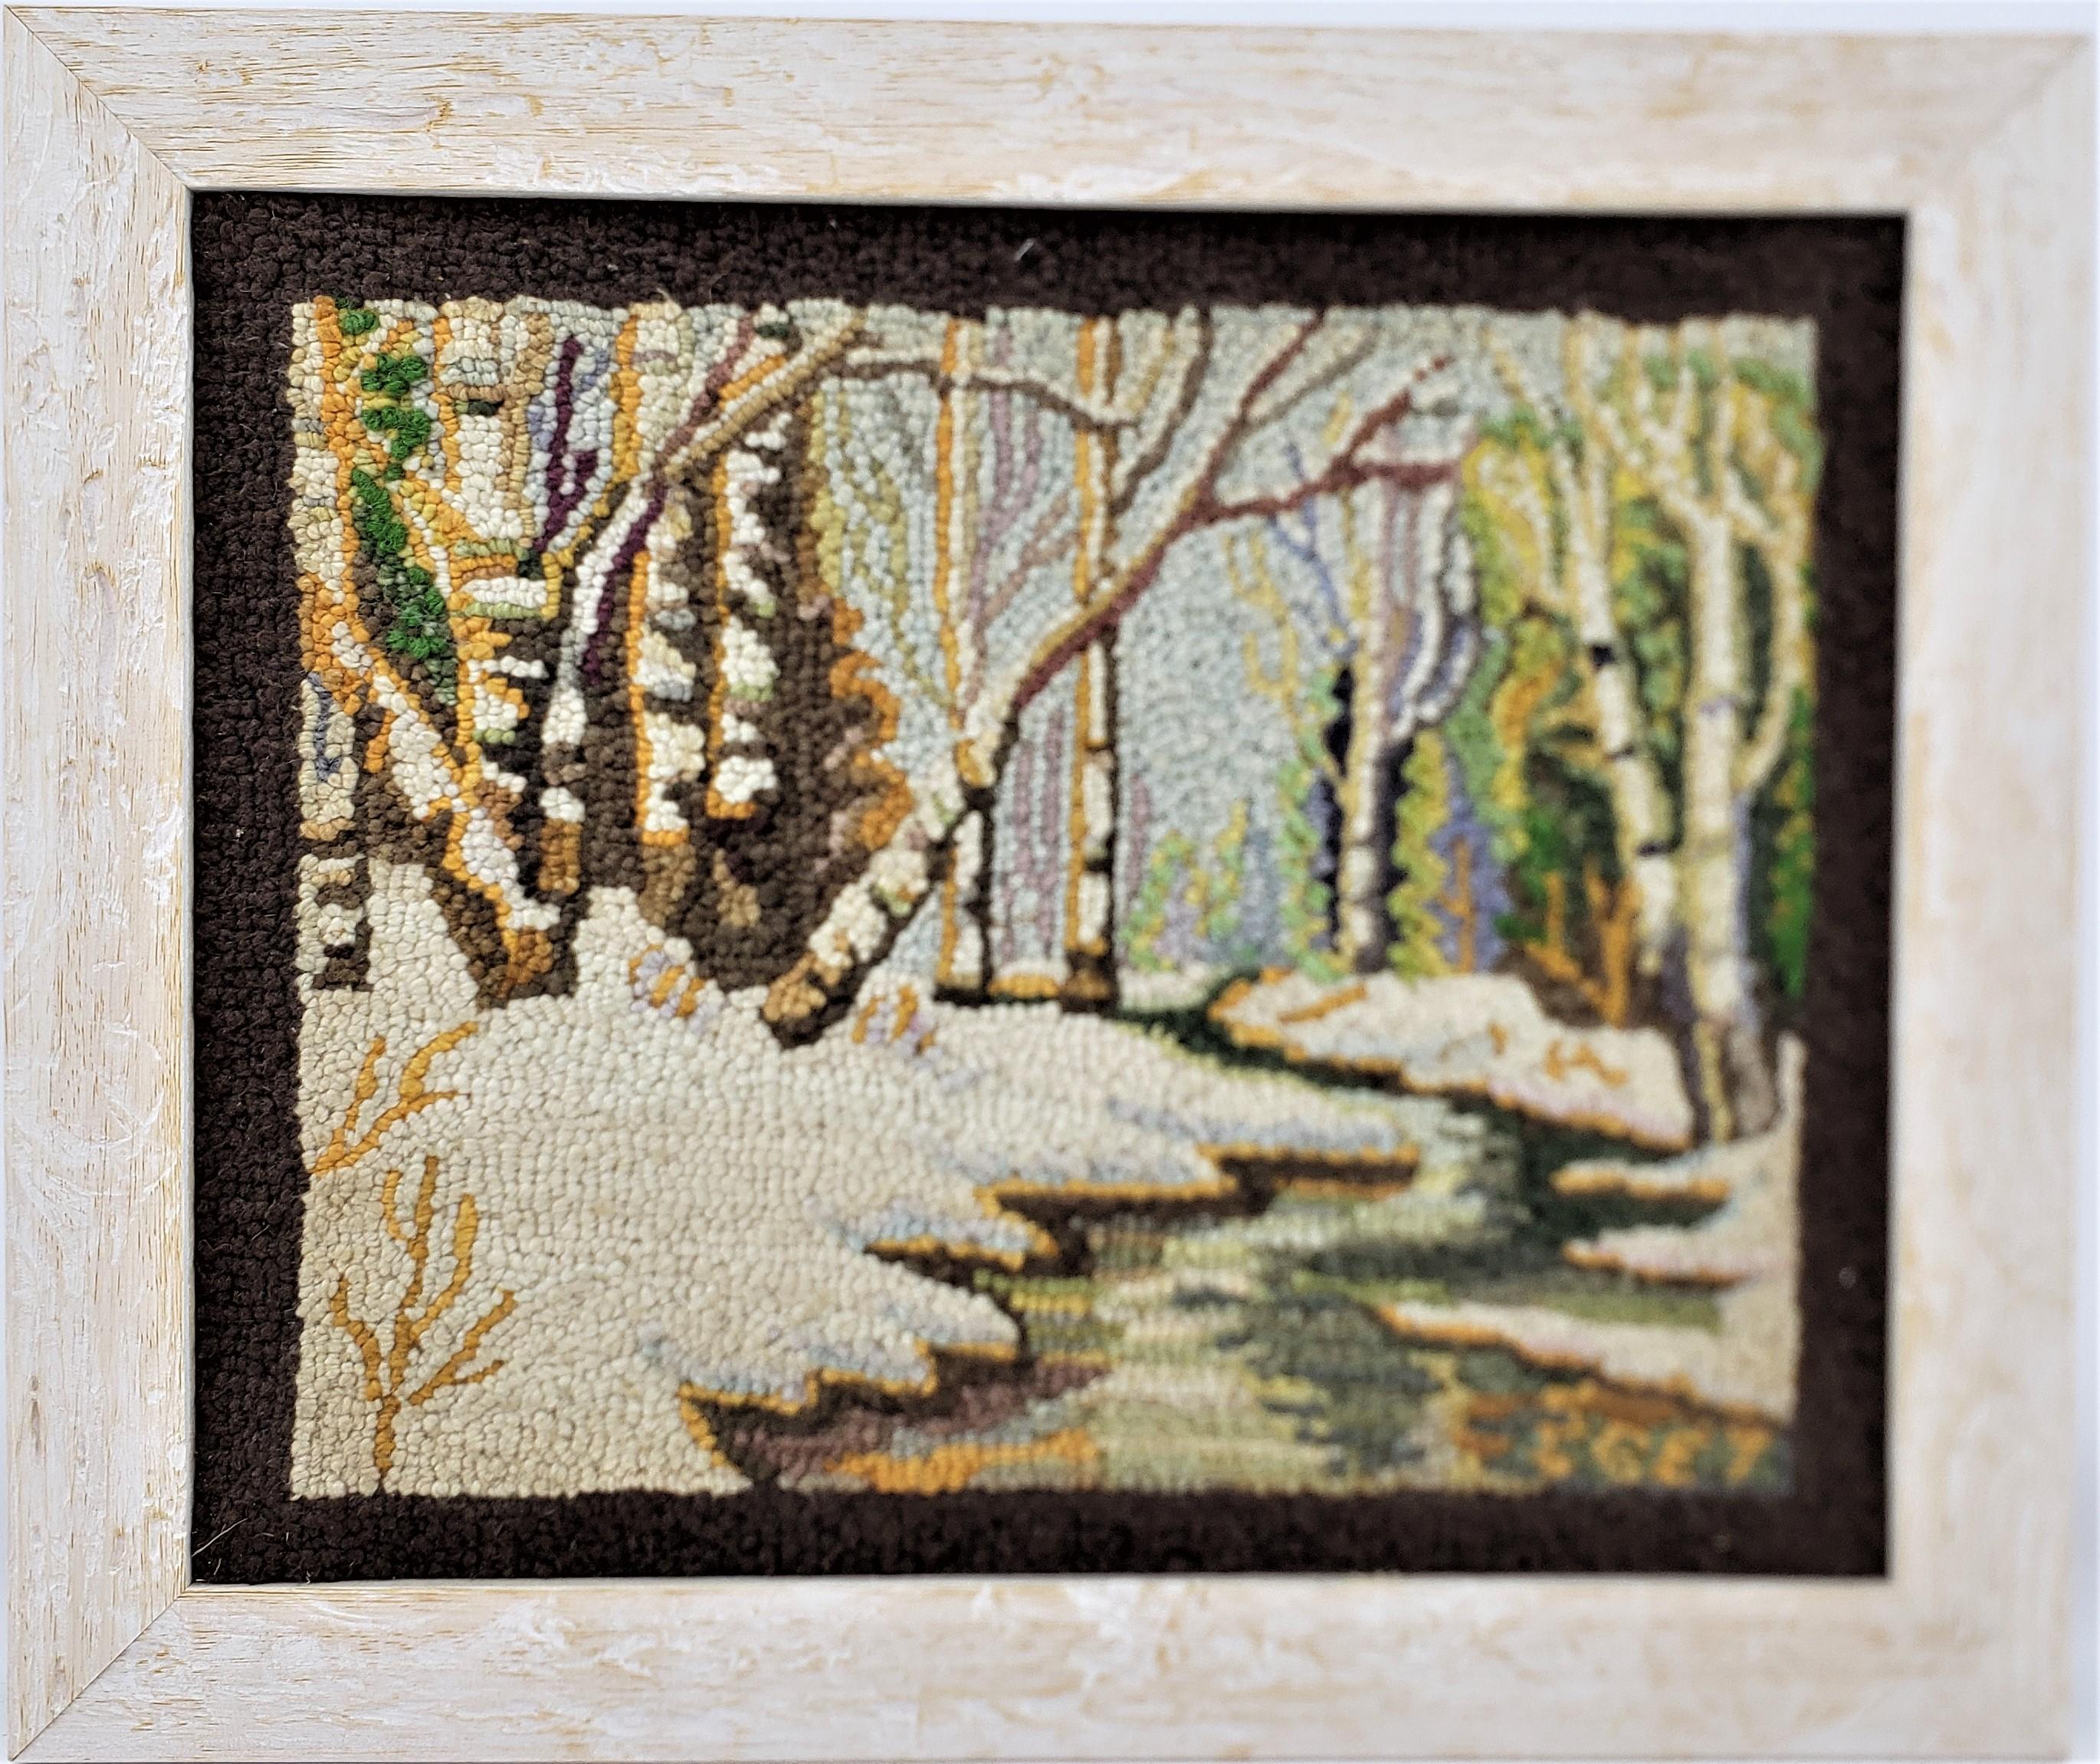 Ce tapis crocheté encadré a été réalisé par le célèbre George Edouard Tremblay du Québec (Canada) vers 1940 dans le style Folk Art de l'époque. Le tapis ou la natte est fait de laine, vraisemblablement sur de la toile de jute et encadré dans un